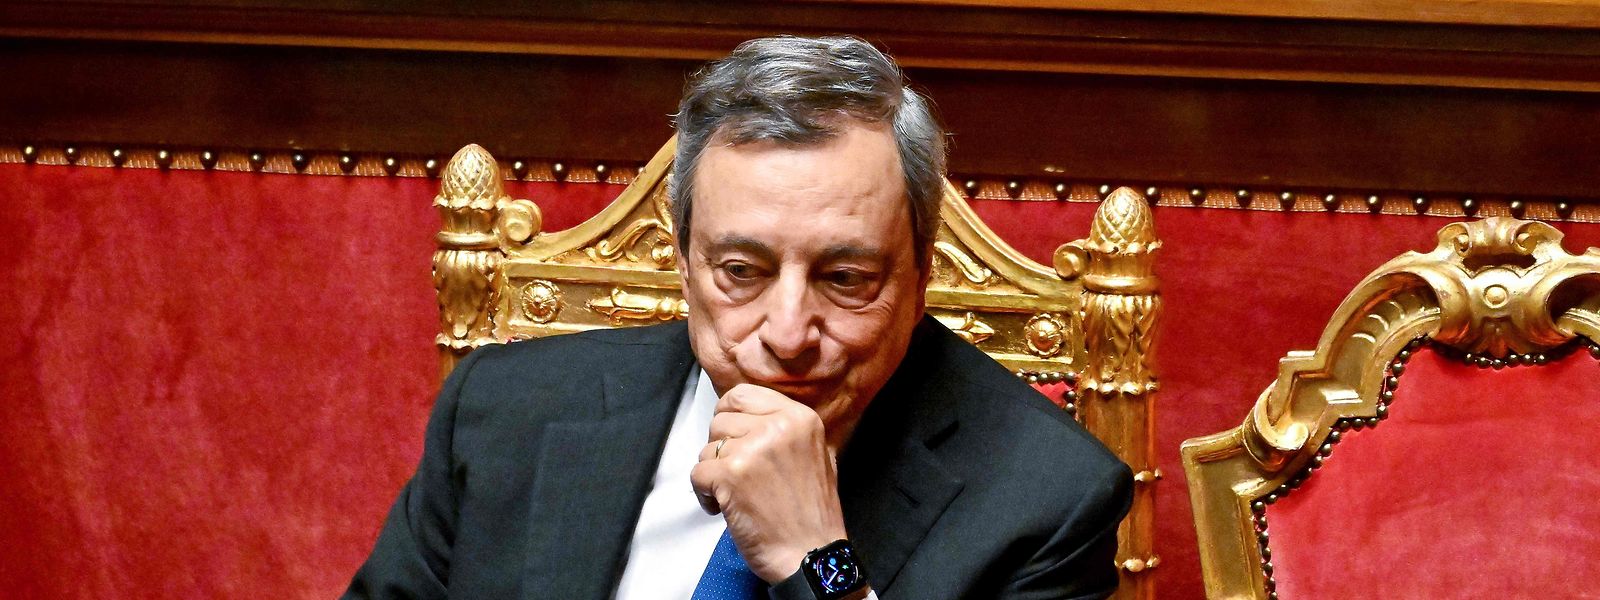 Mario Draghis Regierungsmehrheit in Italien ist zerbröselt. Das könnte dramatische Folgen haben für ein Land, das derzeit ohnehin einige Krisen zu bewältigen hat. 